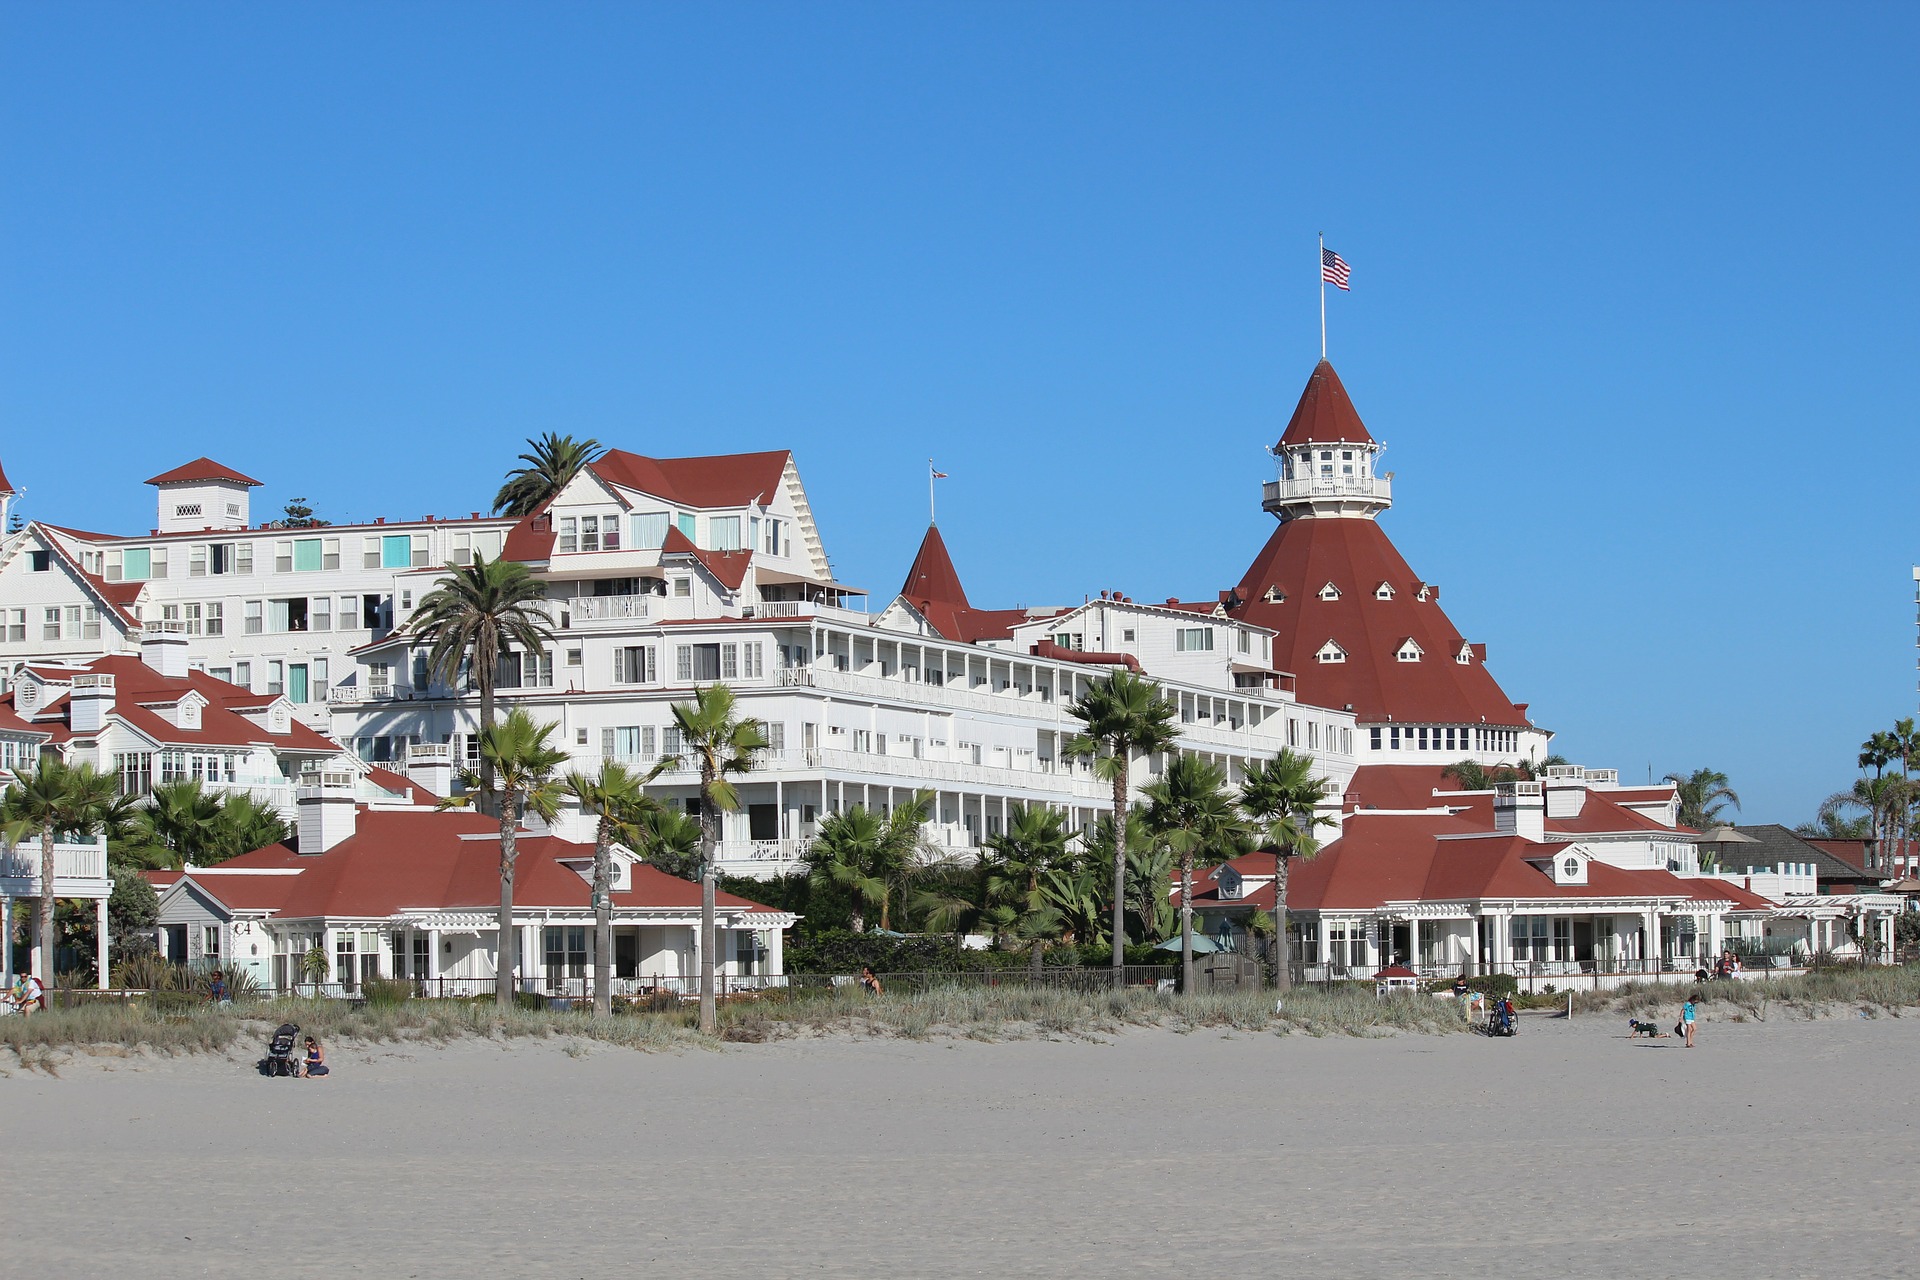 Das Hotel Del Coronado ist weltberühmt und liegt an einem der schönsten Strände der USA bei San Diego